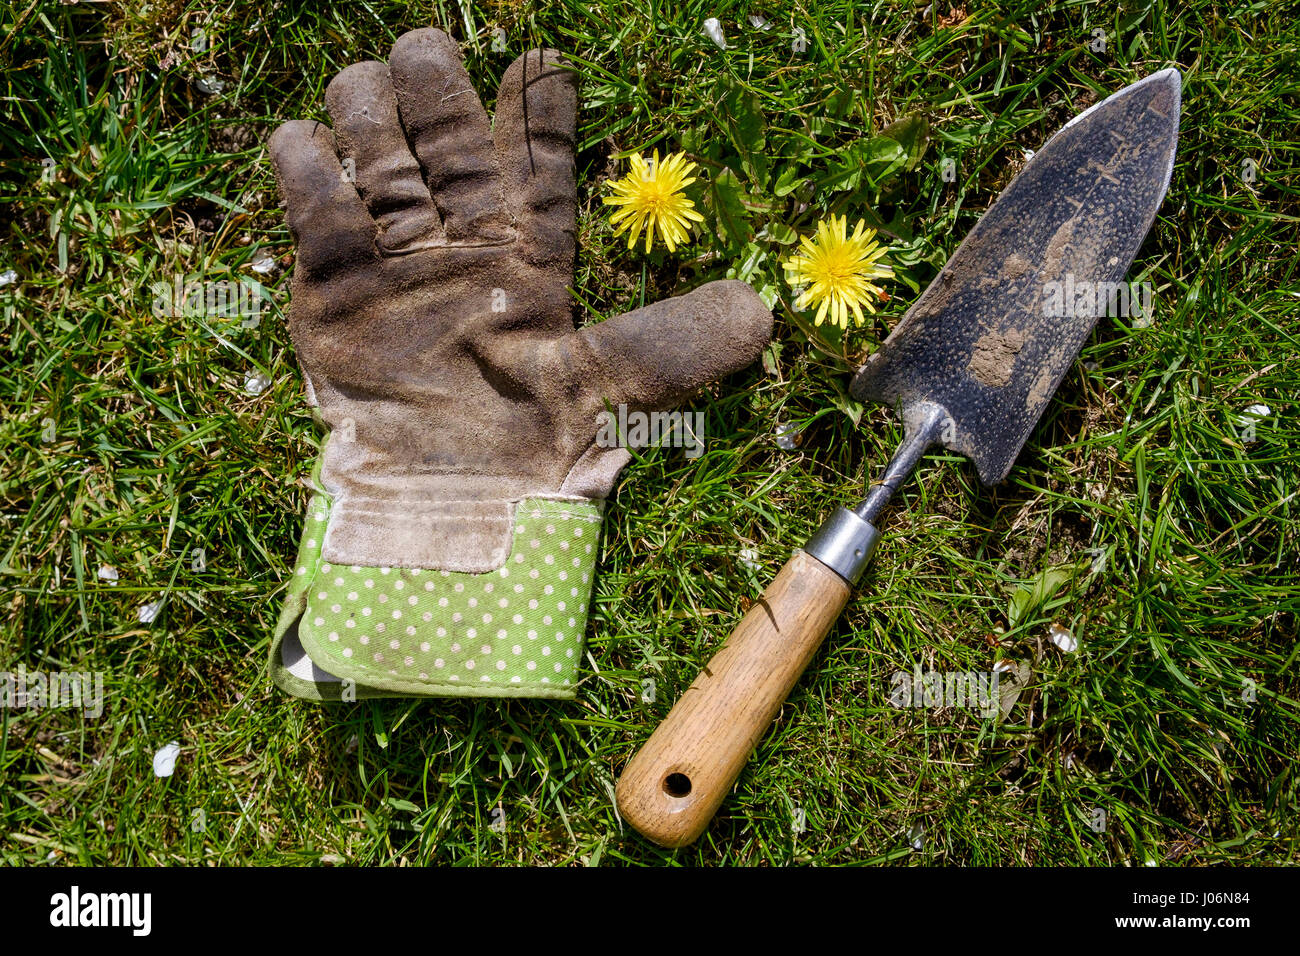 Un guante de jardín más sucio y un jardín paleta utilizada para el desmalezado se muestren en un césped infestados con el diente de león (Taraxacum) malezas Foto de stock